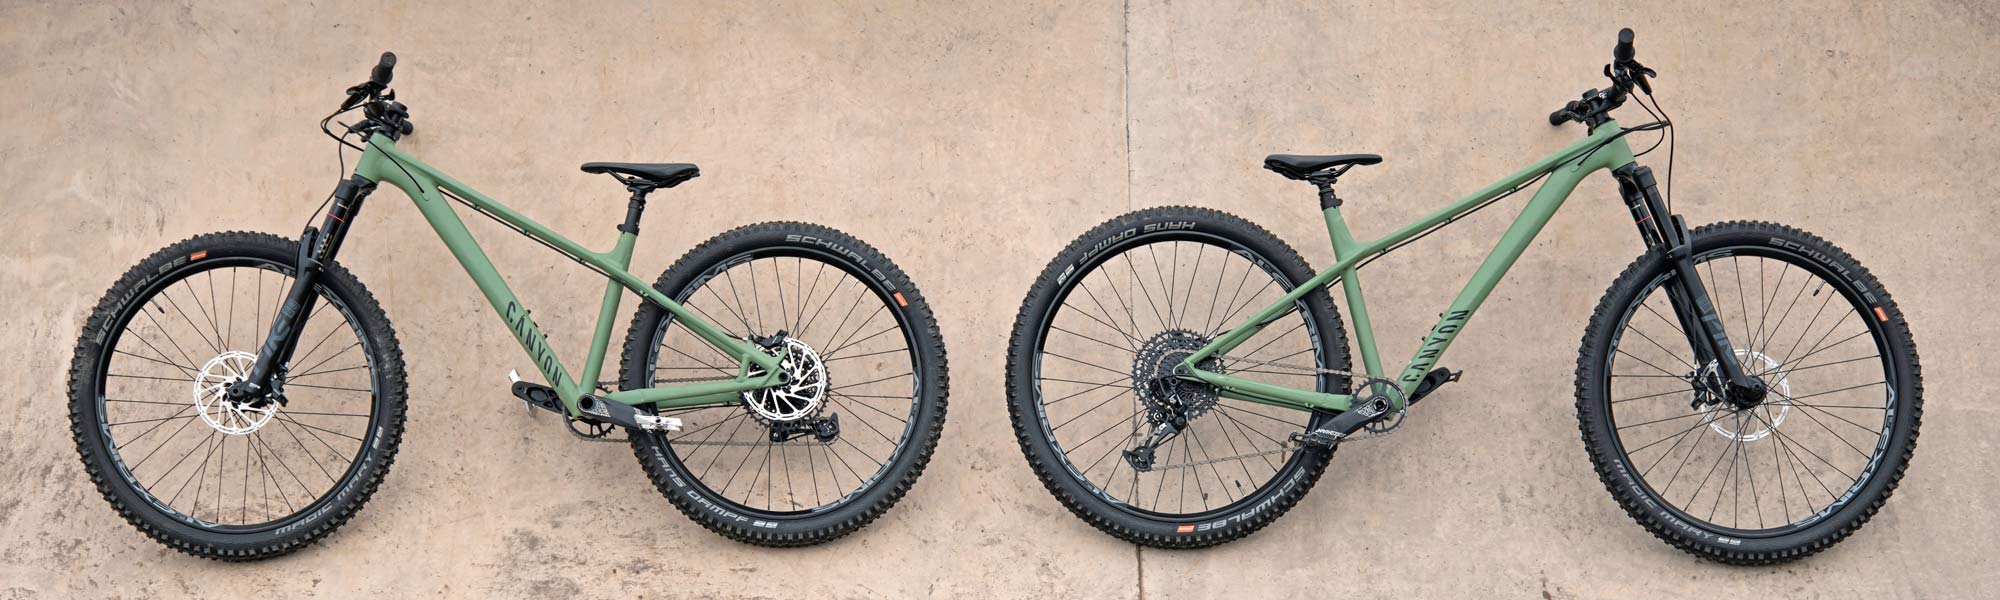 2021 Canyon Stoic all-mountain enduro trail bike hardtail mountain bike, wheelsize specific